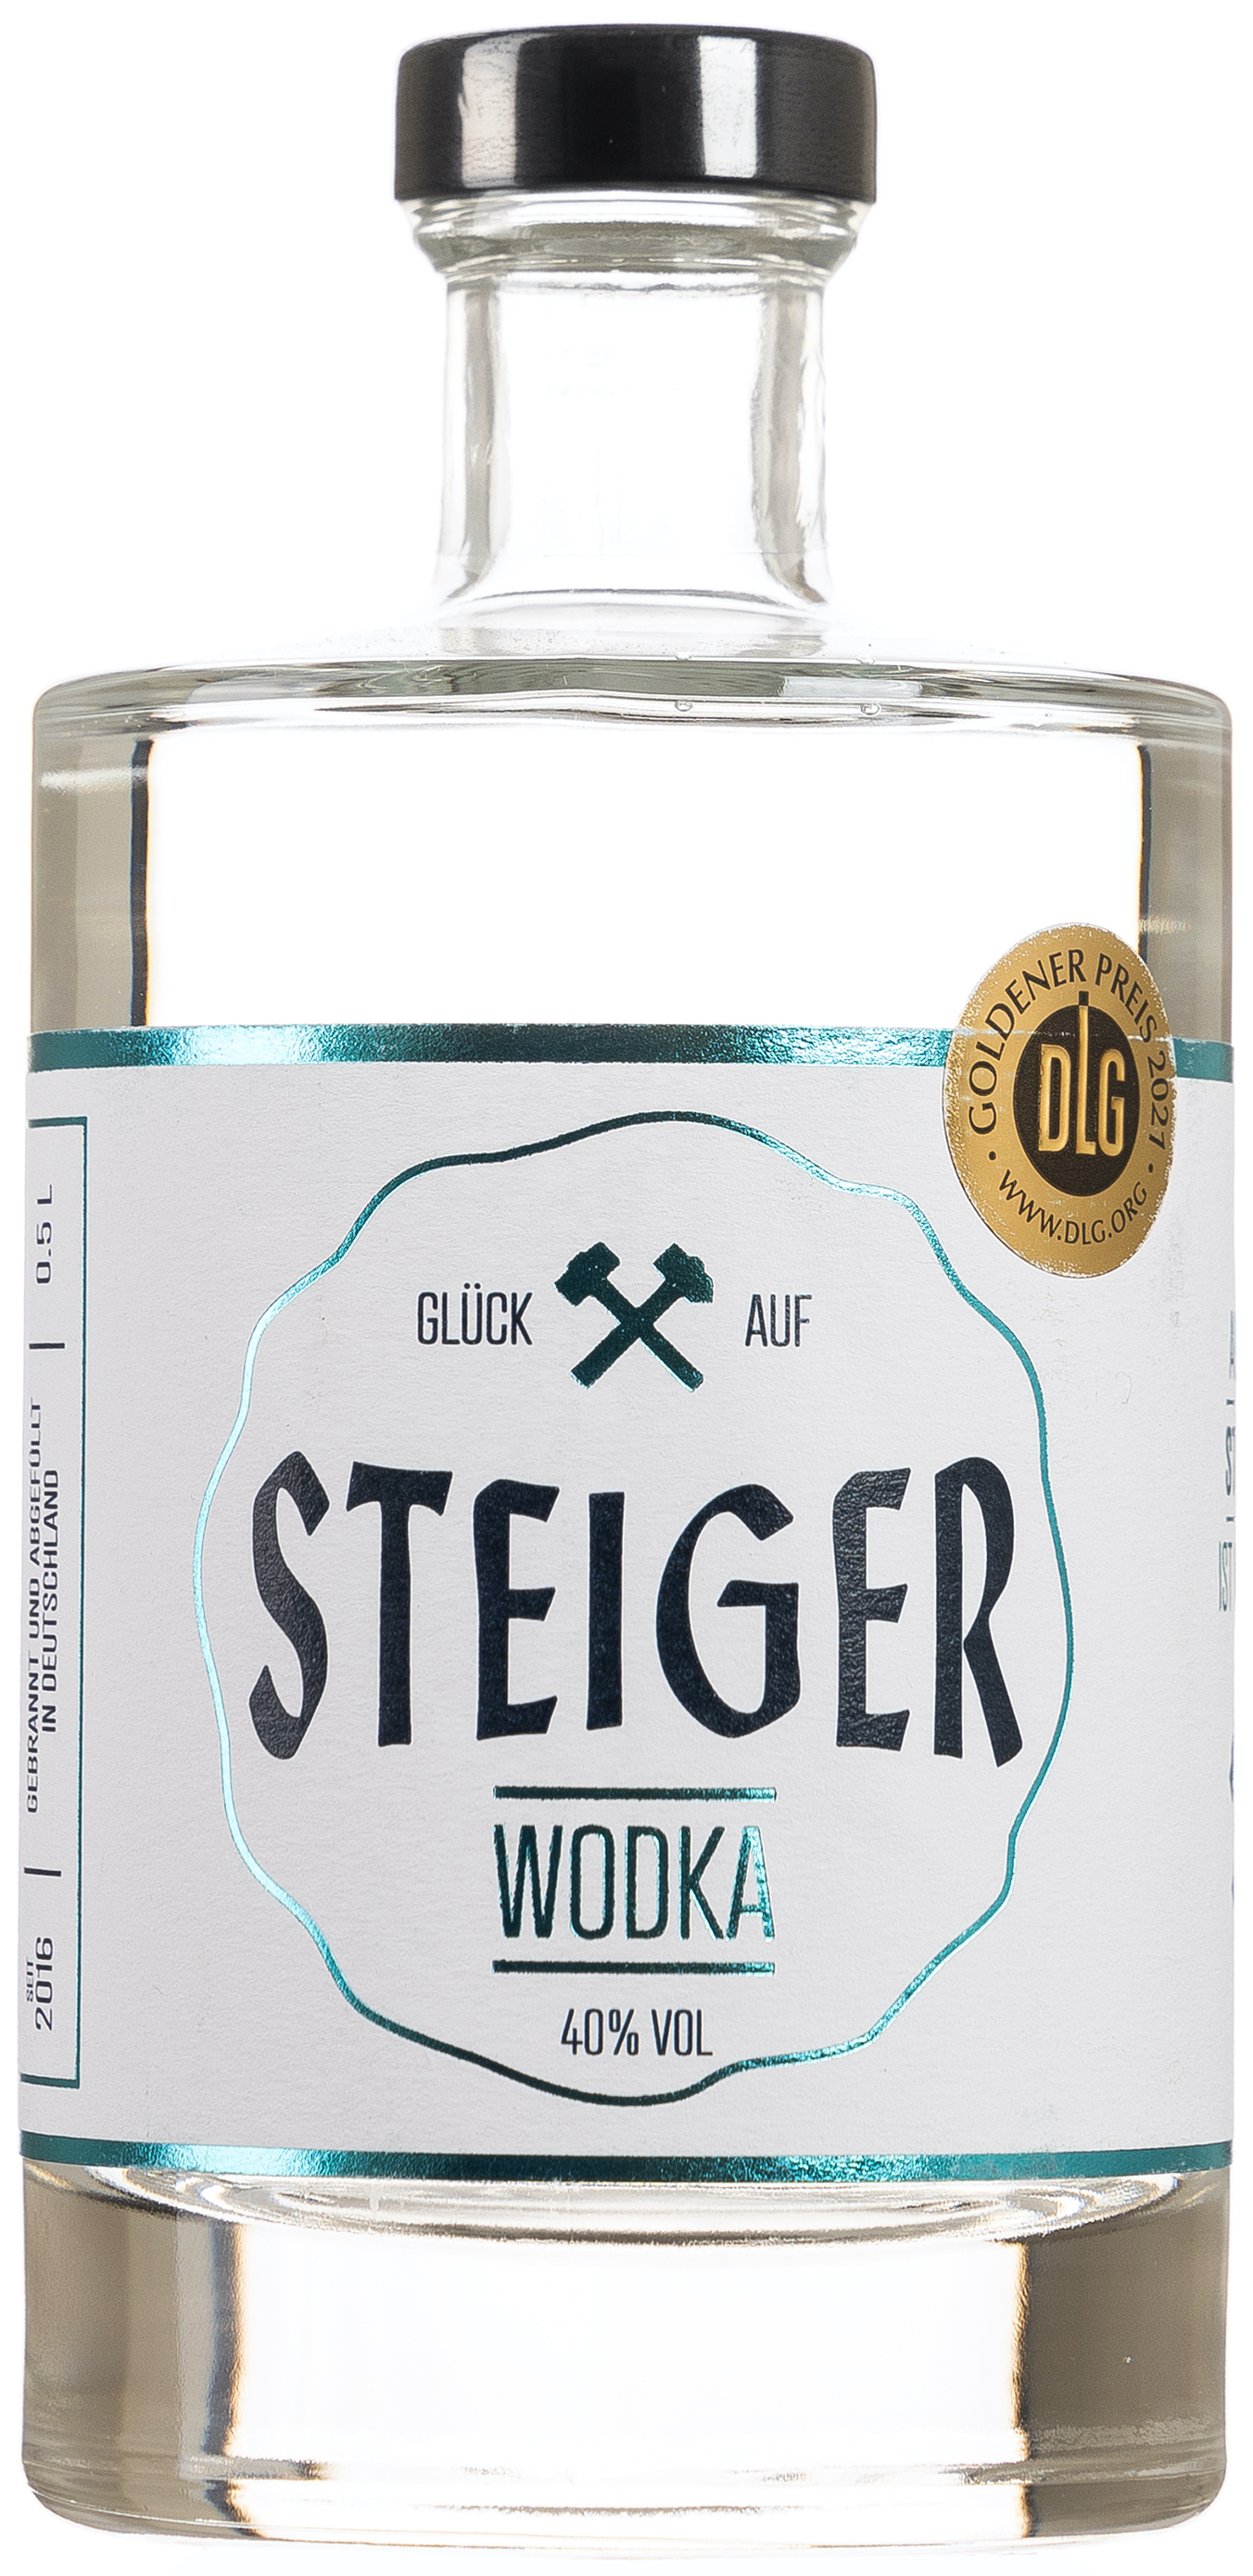 Steiger Wodka 40% vol. 0,5L